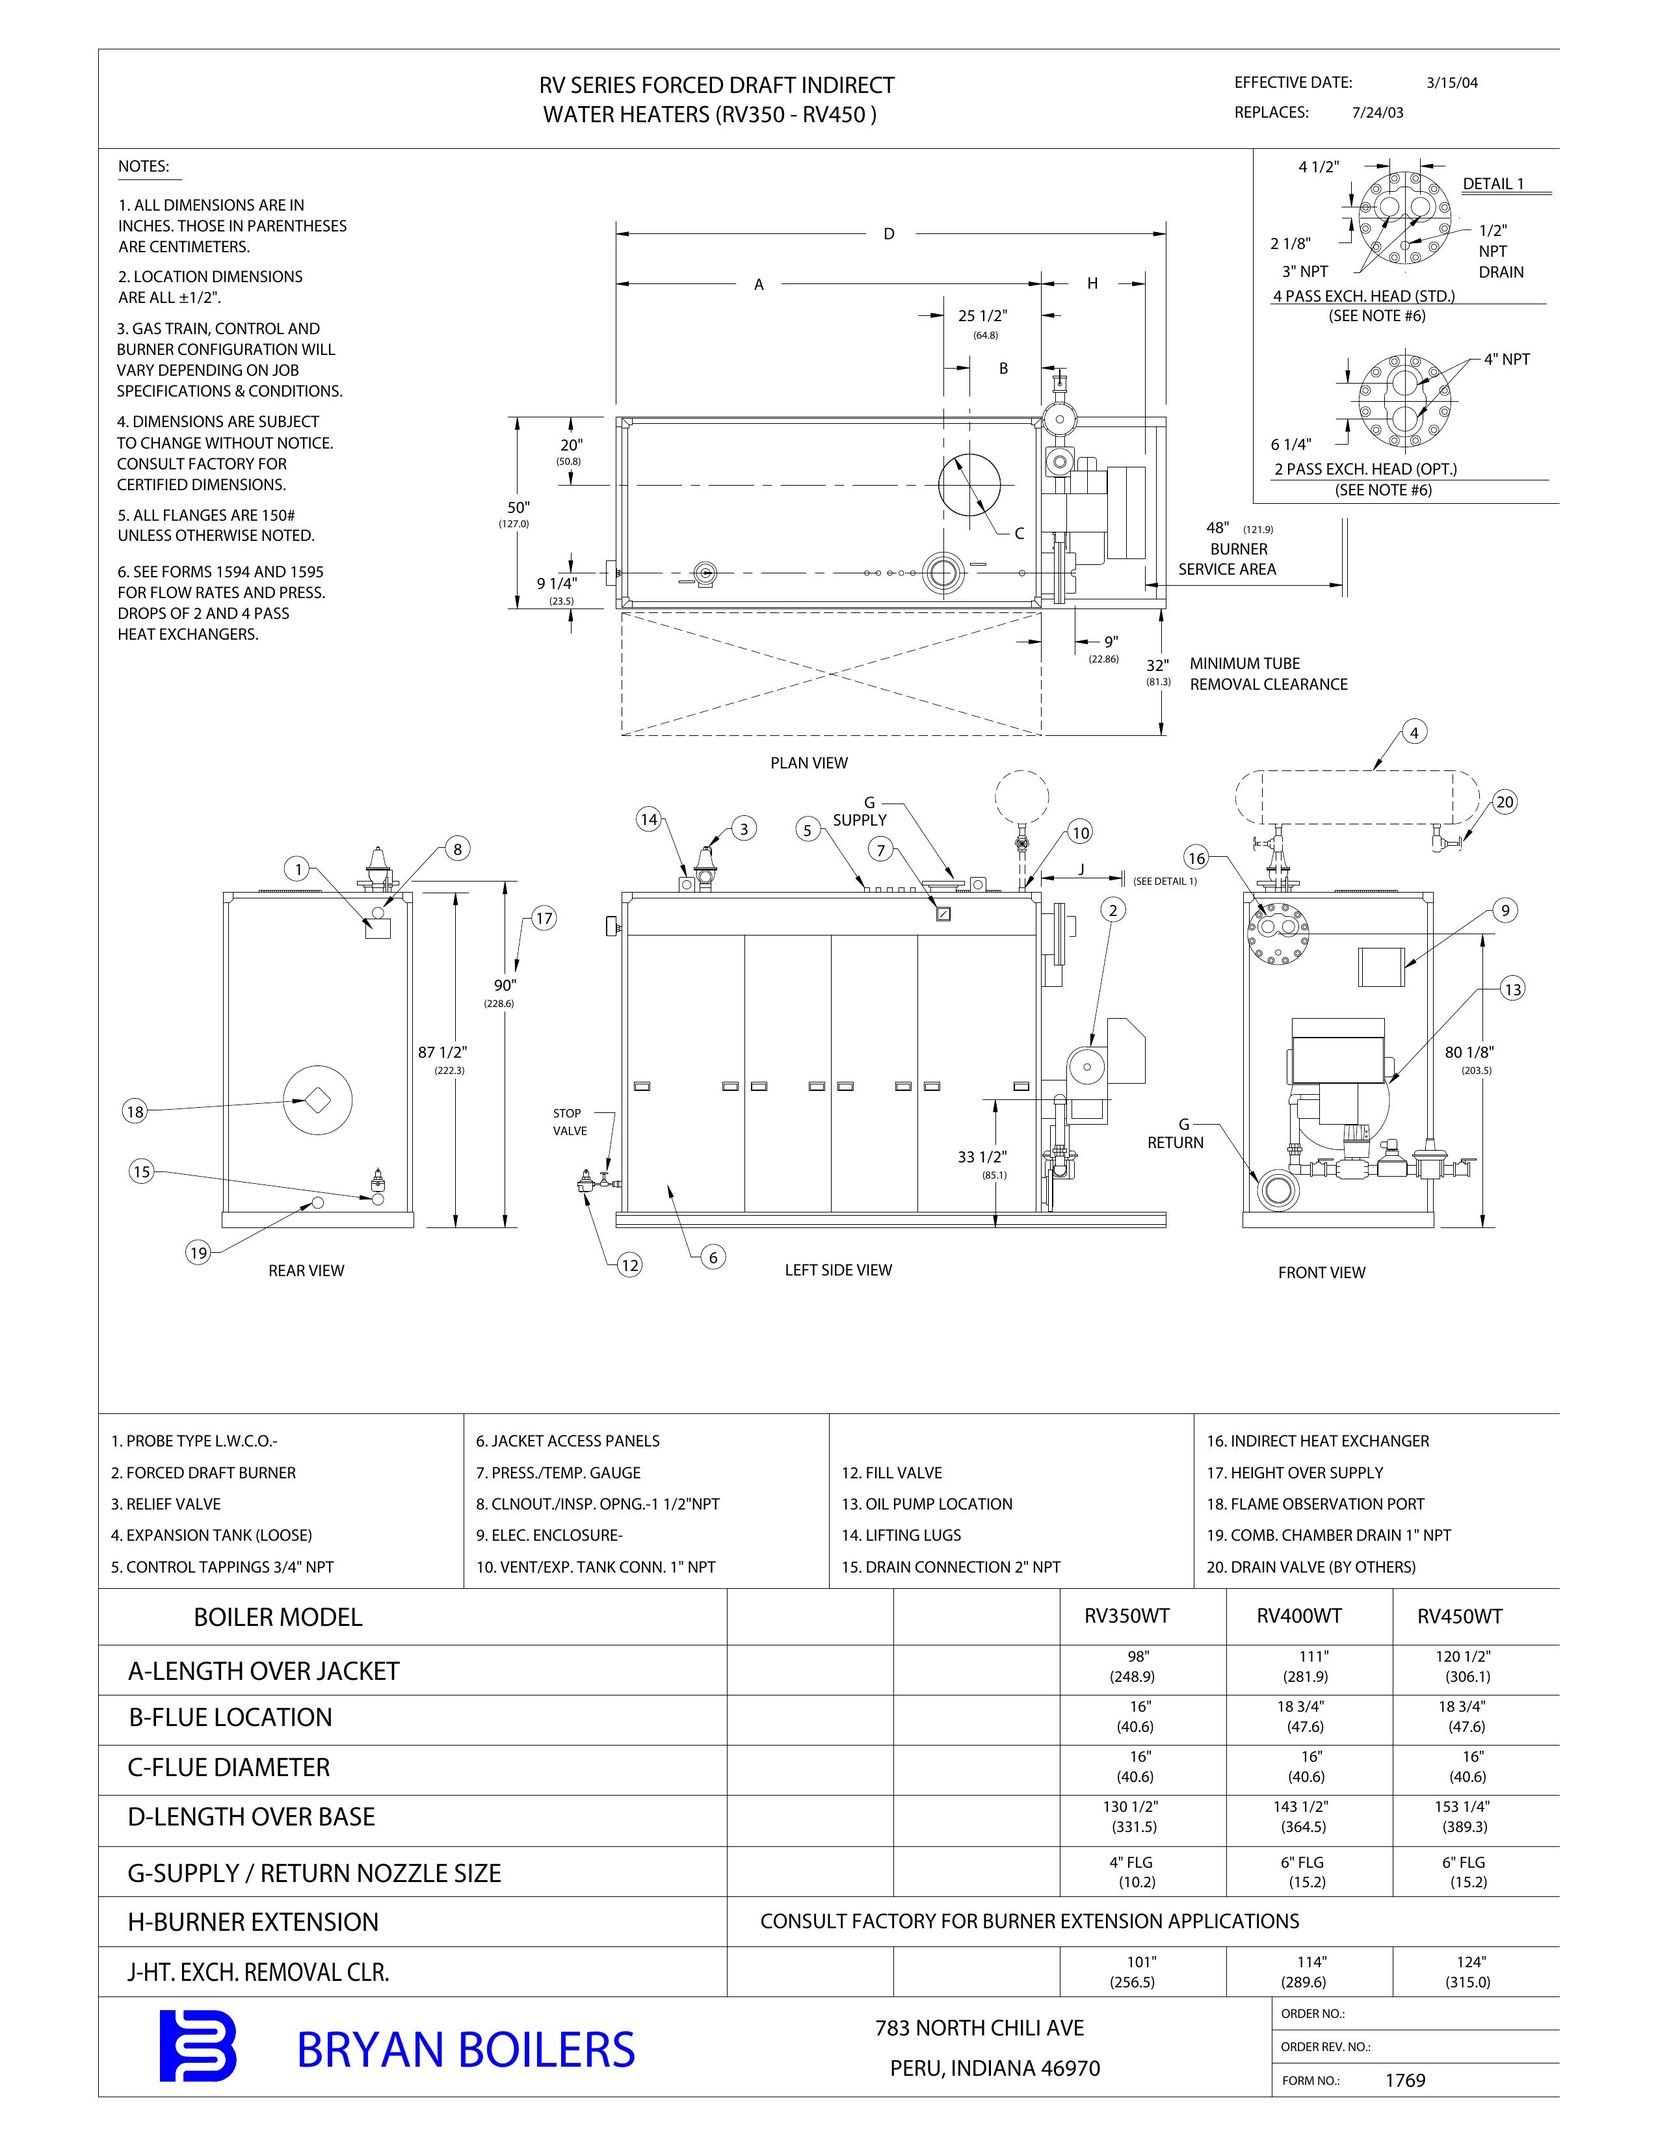 Bryan Boilers RV450 Water Heater User Manual